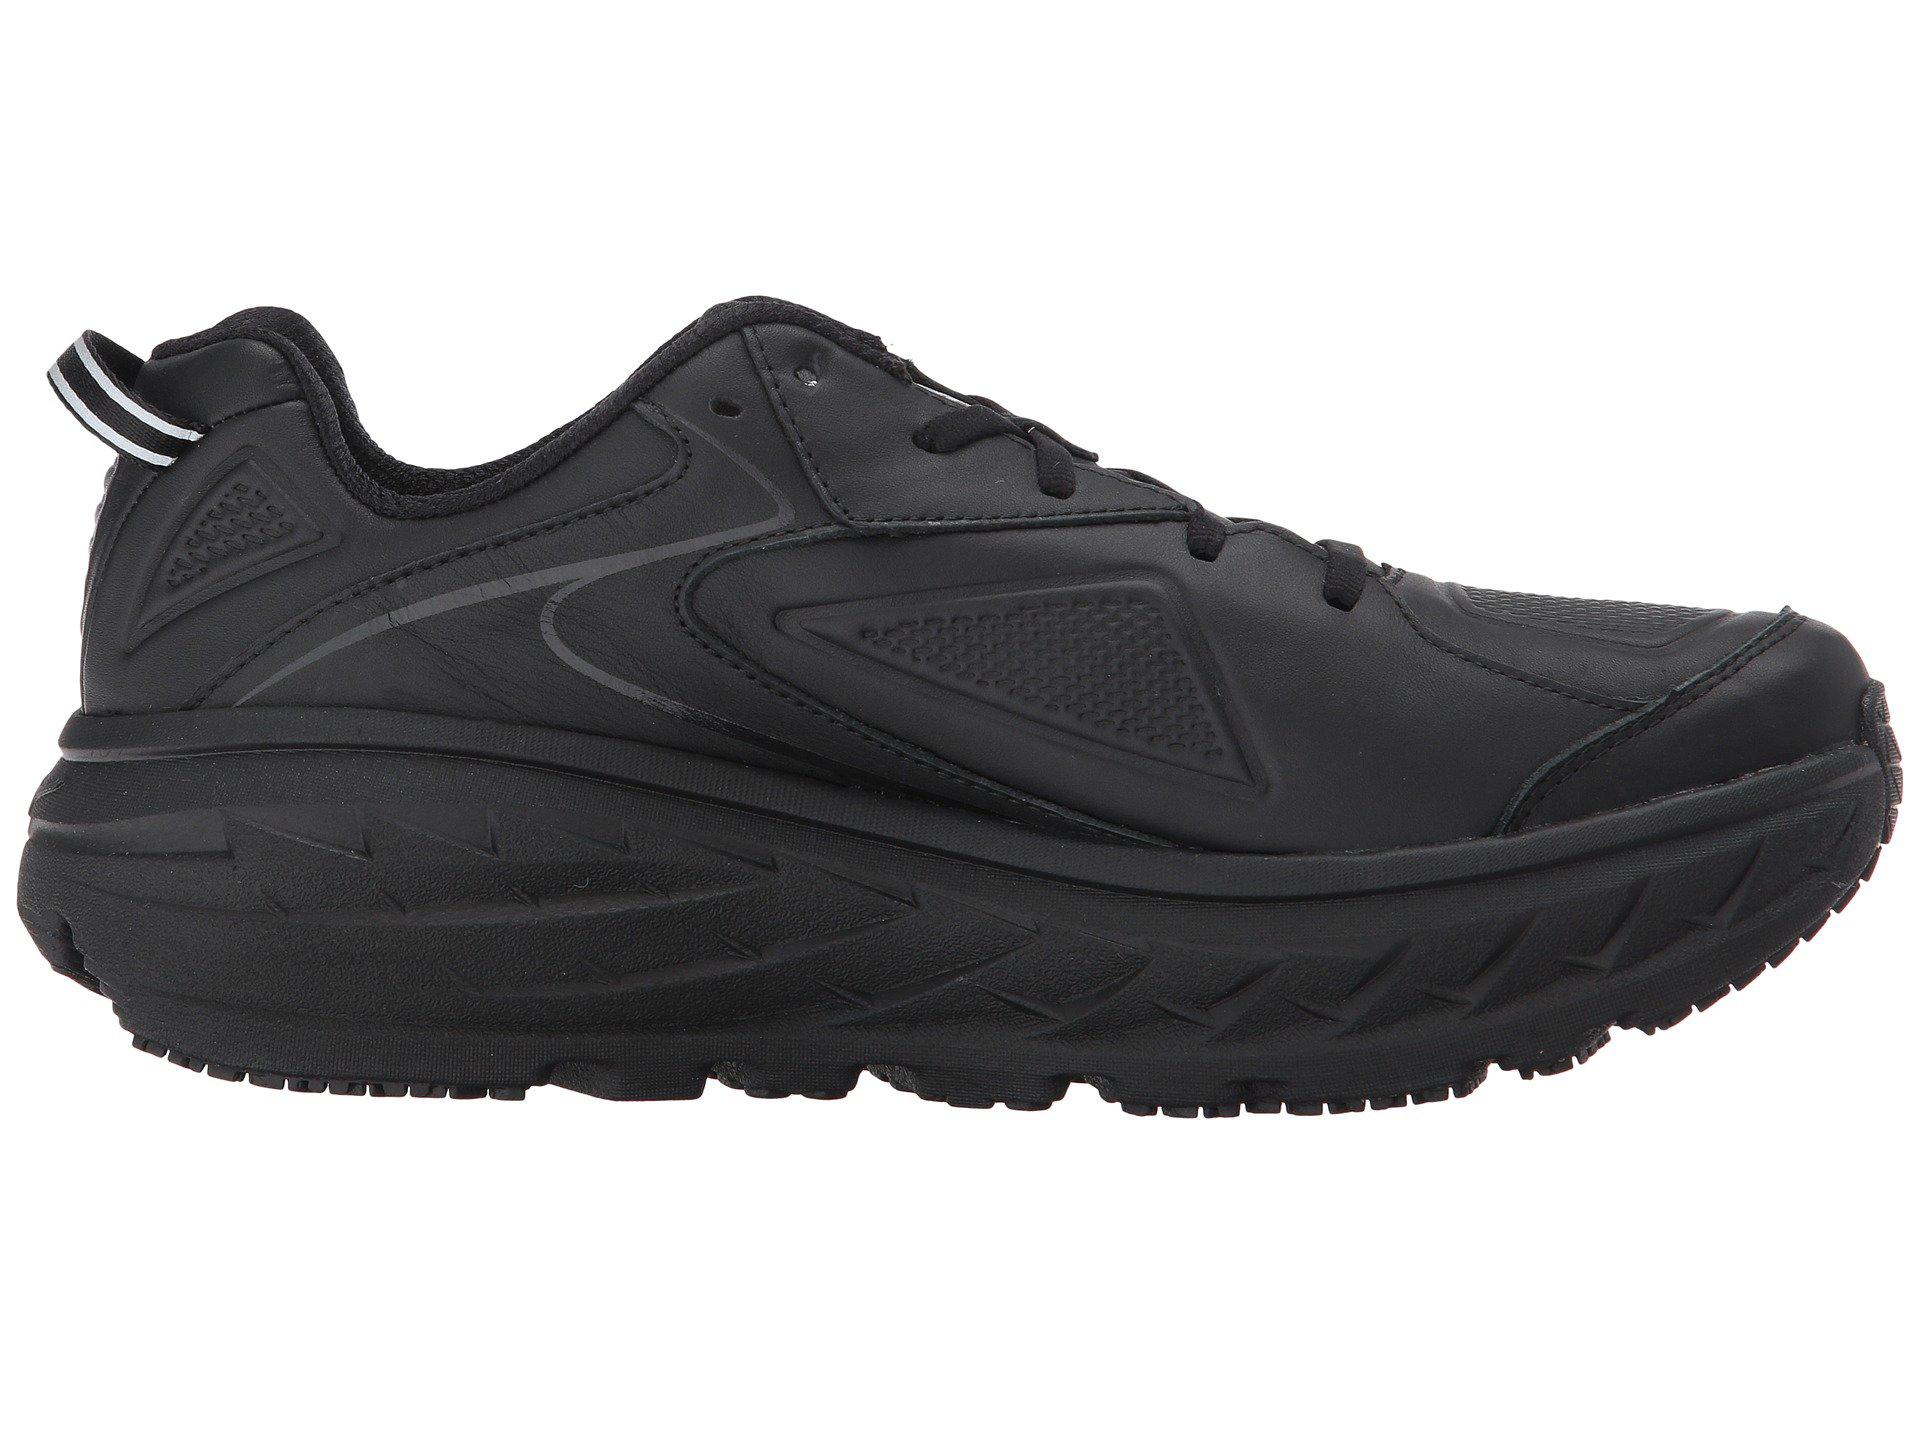 Hoka One One Leather Bondi Ltr (black) Men's Running Shoes for Men - Lyst